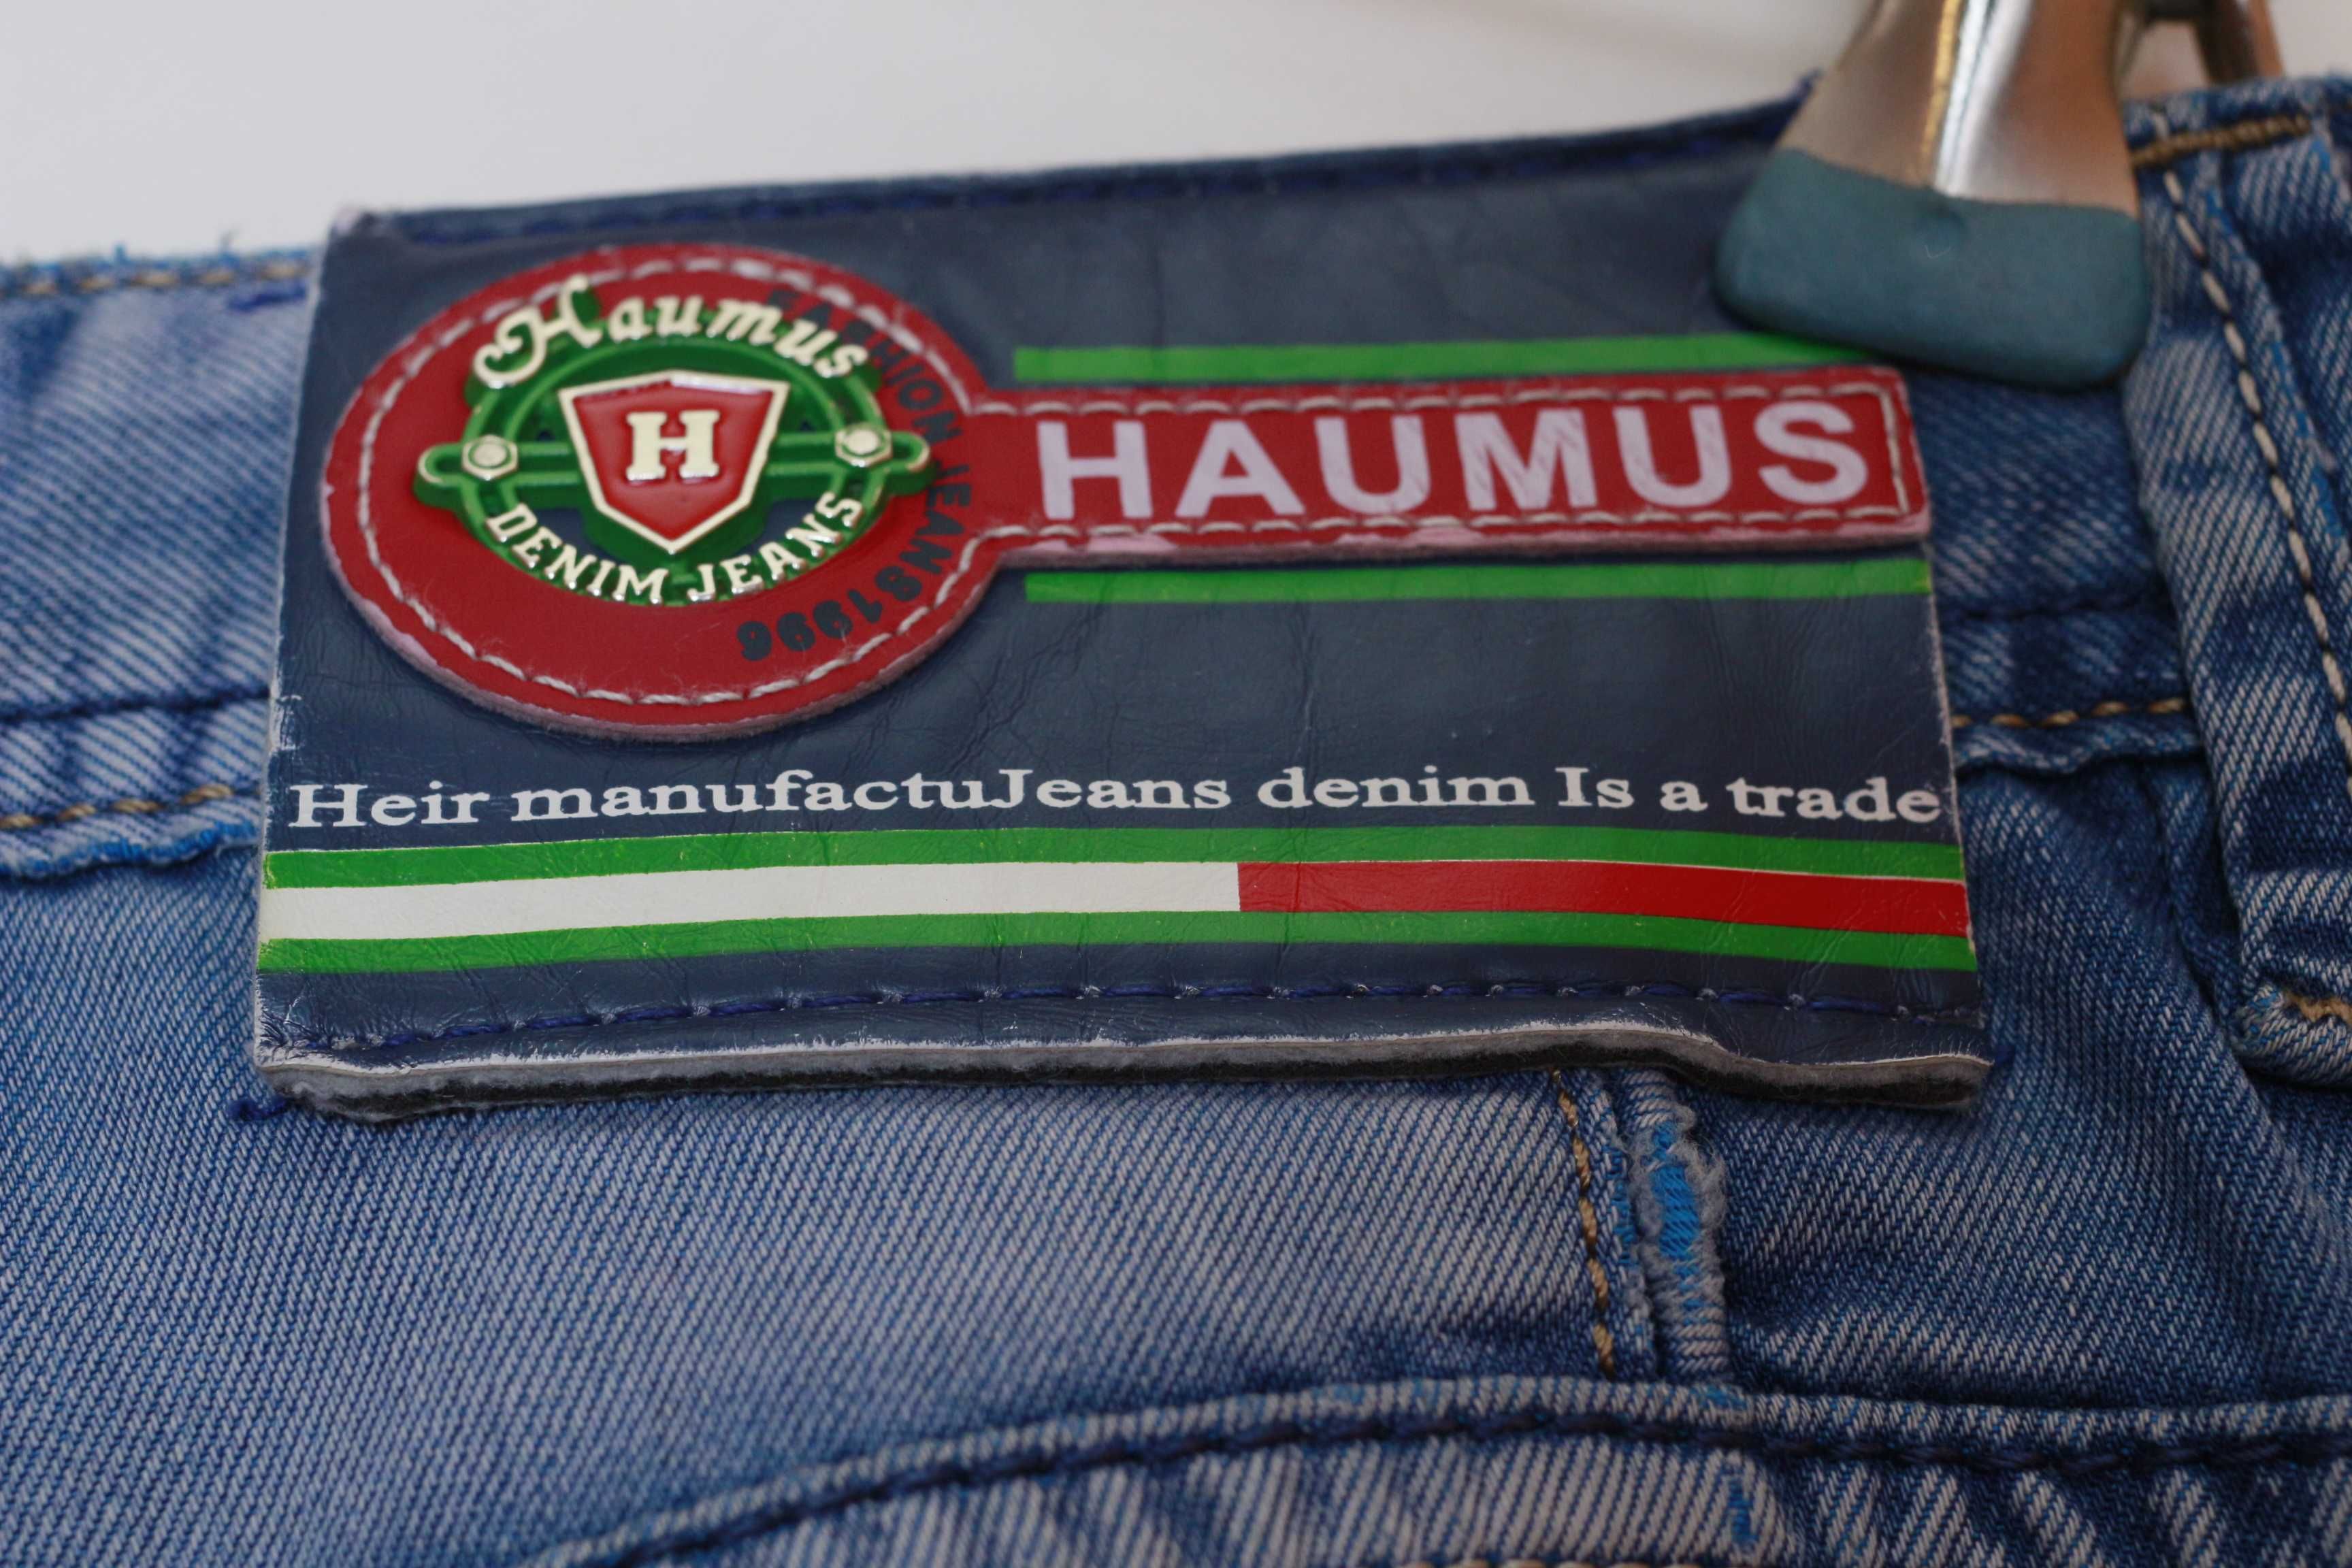 Jeansy Haumus 35 indygo spodnie szer pas 42cm dług 113cm